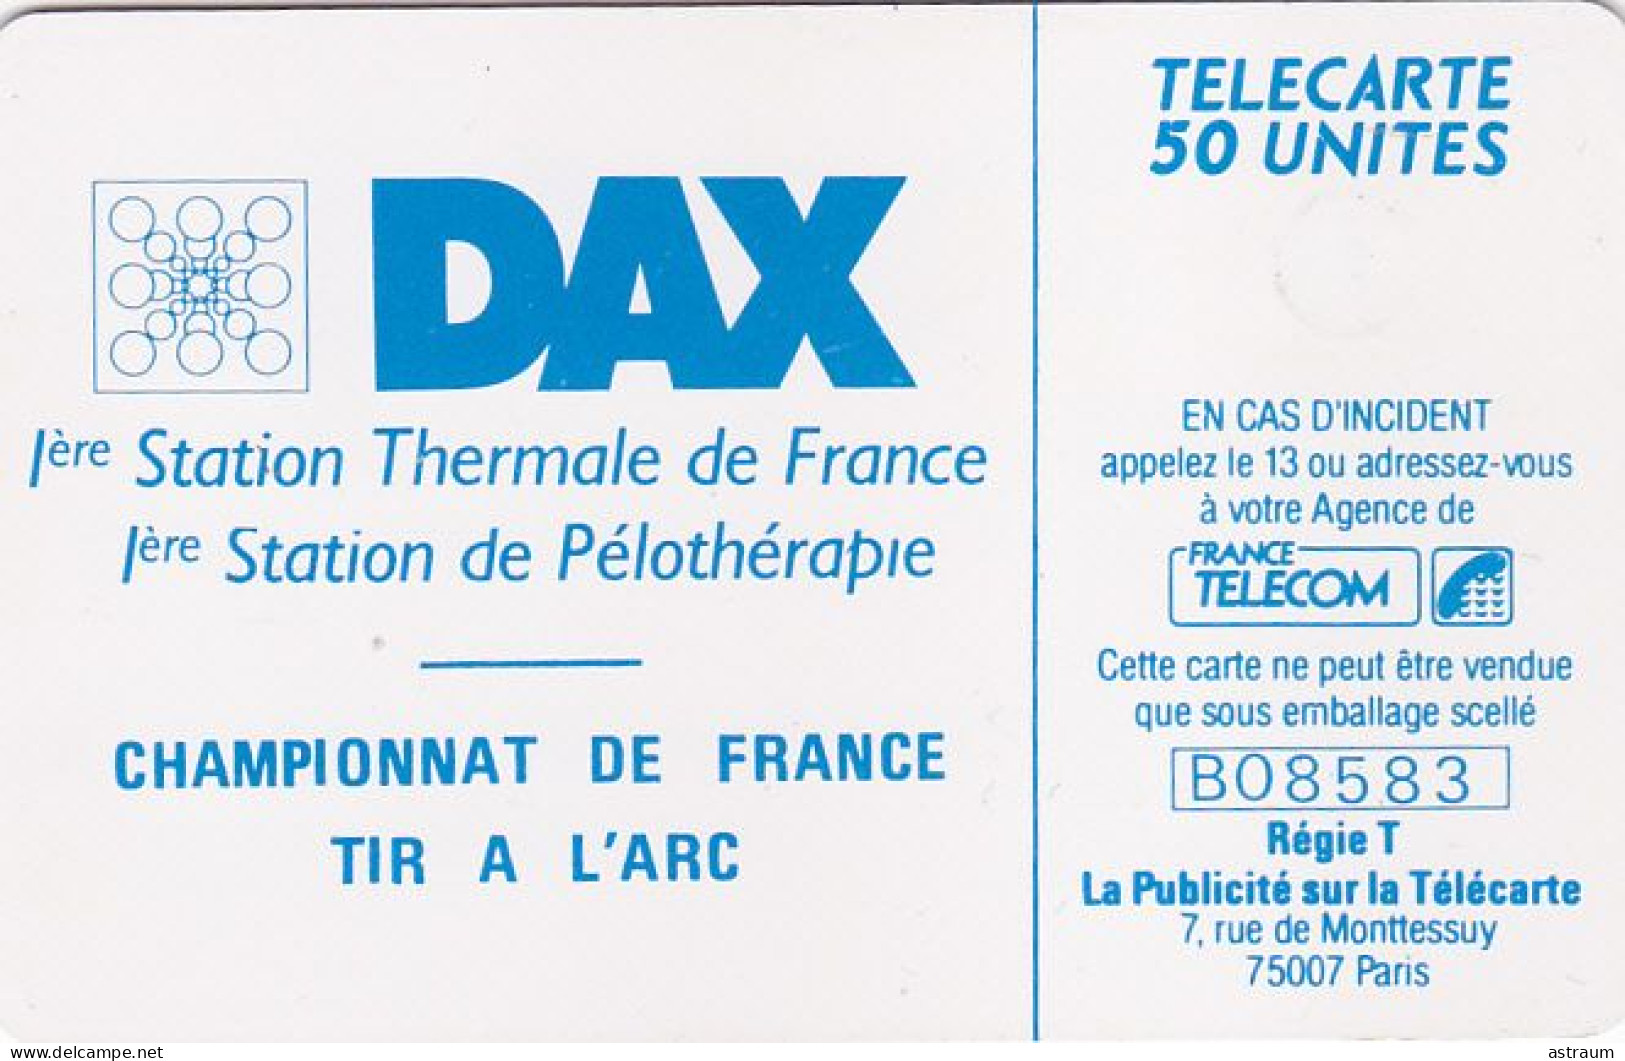 Telecarte Privée D432 NEUVE - Dax Championnat De Tir A L'arc - 1000 Ex - Gem - 50 Un - 1990 - Privat